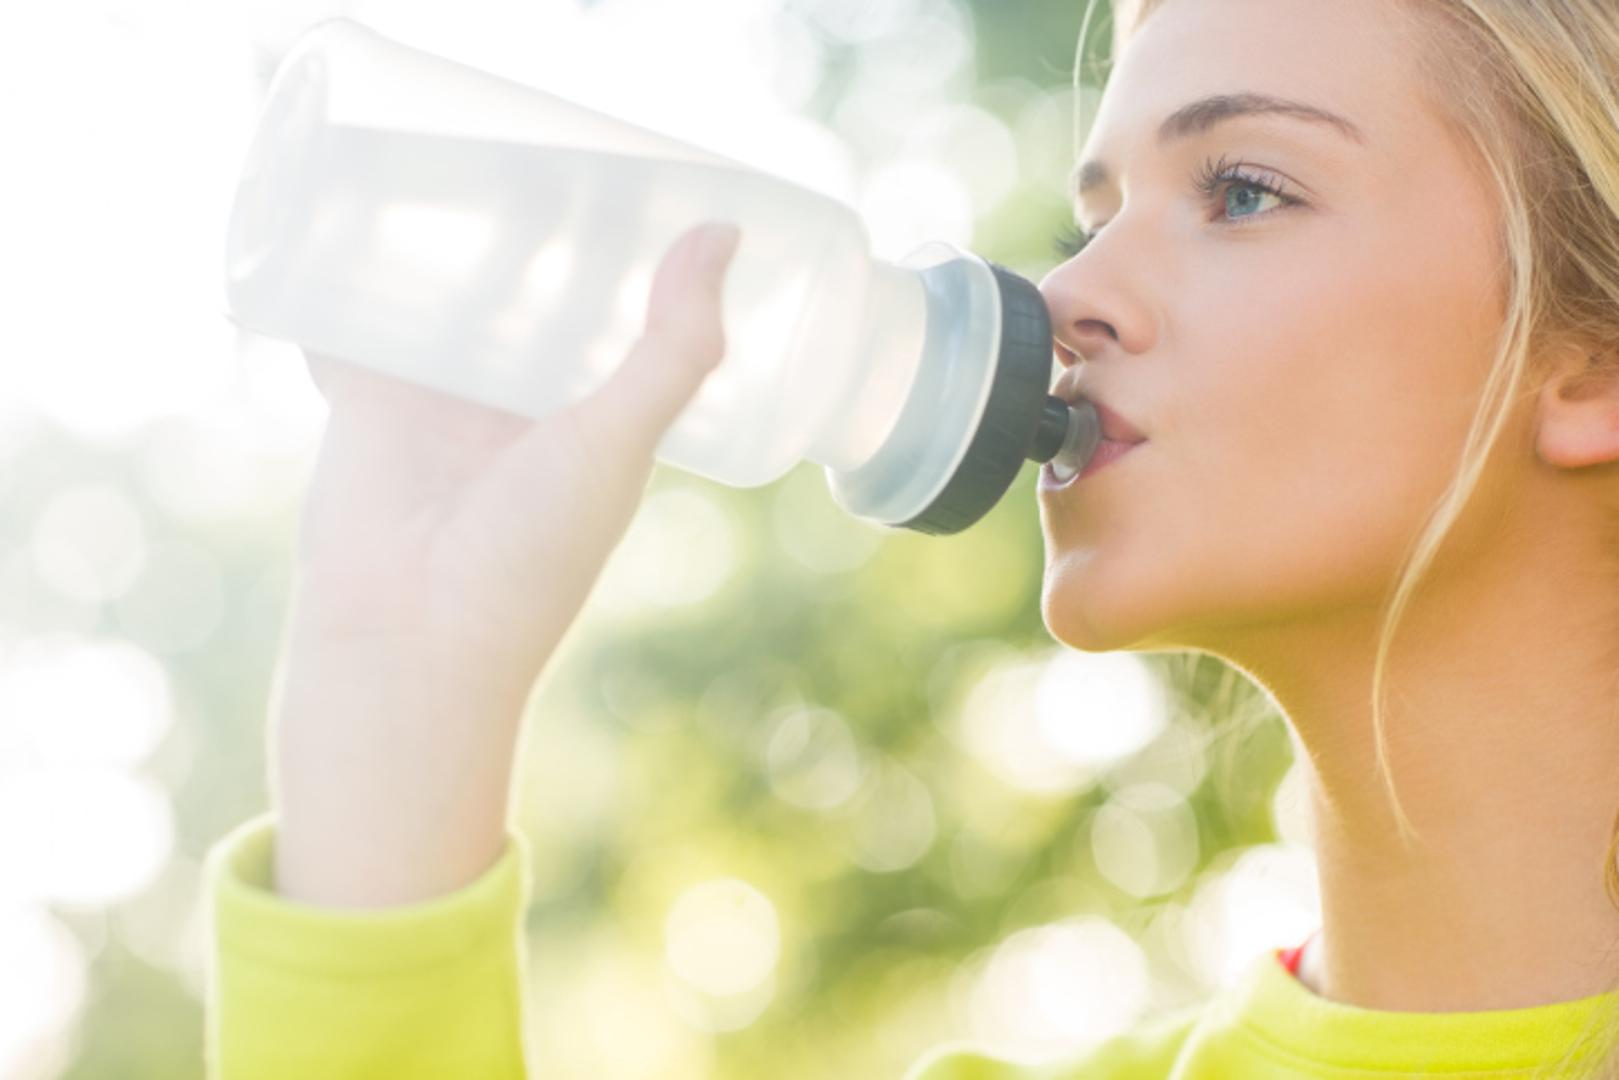 Ako želite izgubiti neželjene kilograme, hidratacija organizma je vrlo važan korak i pomaže u bržoj eliminaciji masnih naslaga. 